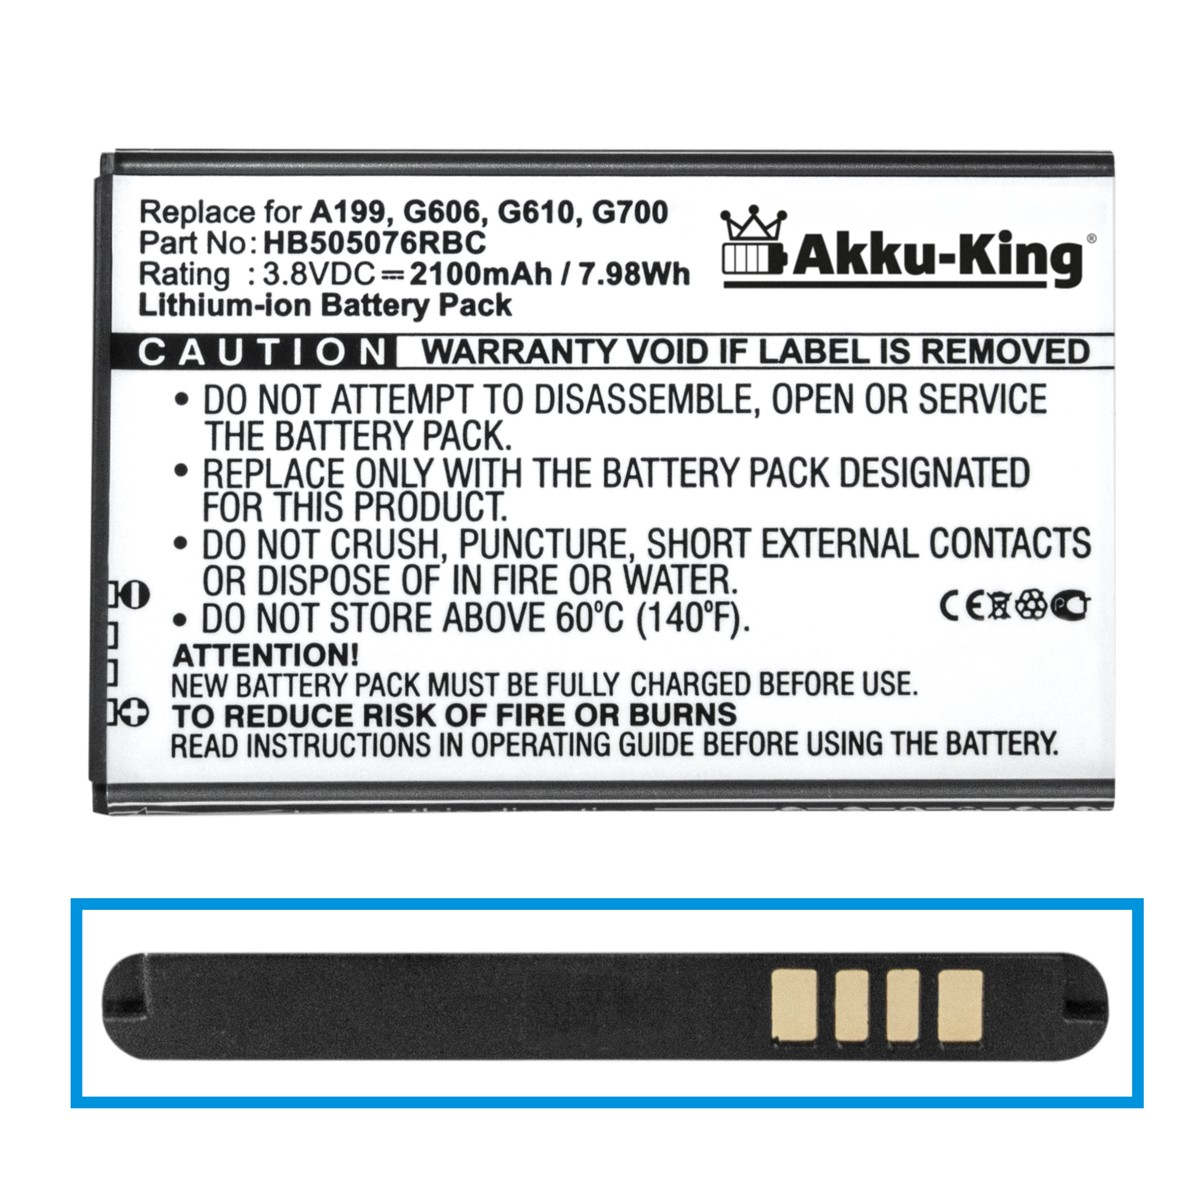 AKKU-KING Akku kompatibel mit HB505076RBC Li-Ion Handy-Akku, Volt, 2100mAh Huawei 3.8